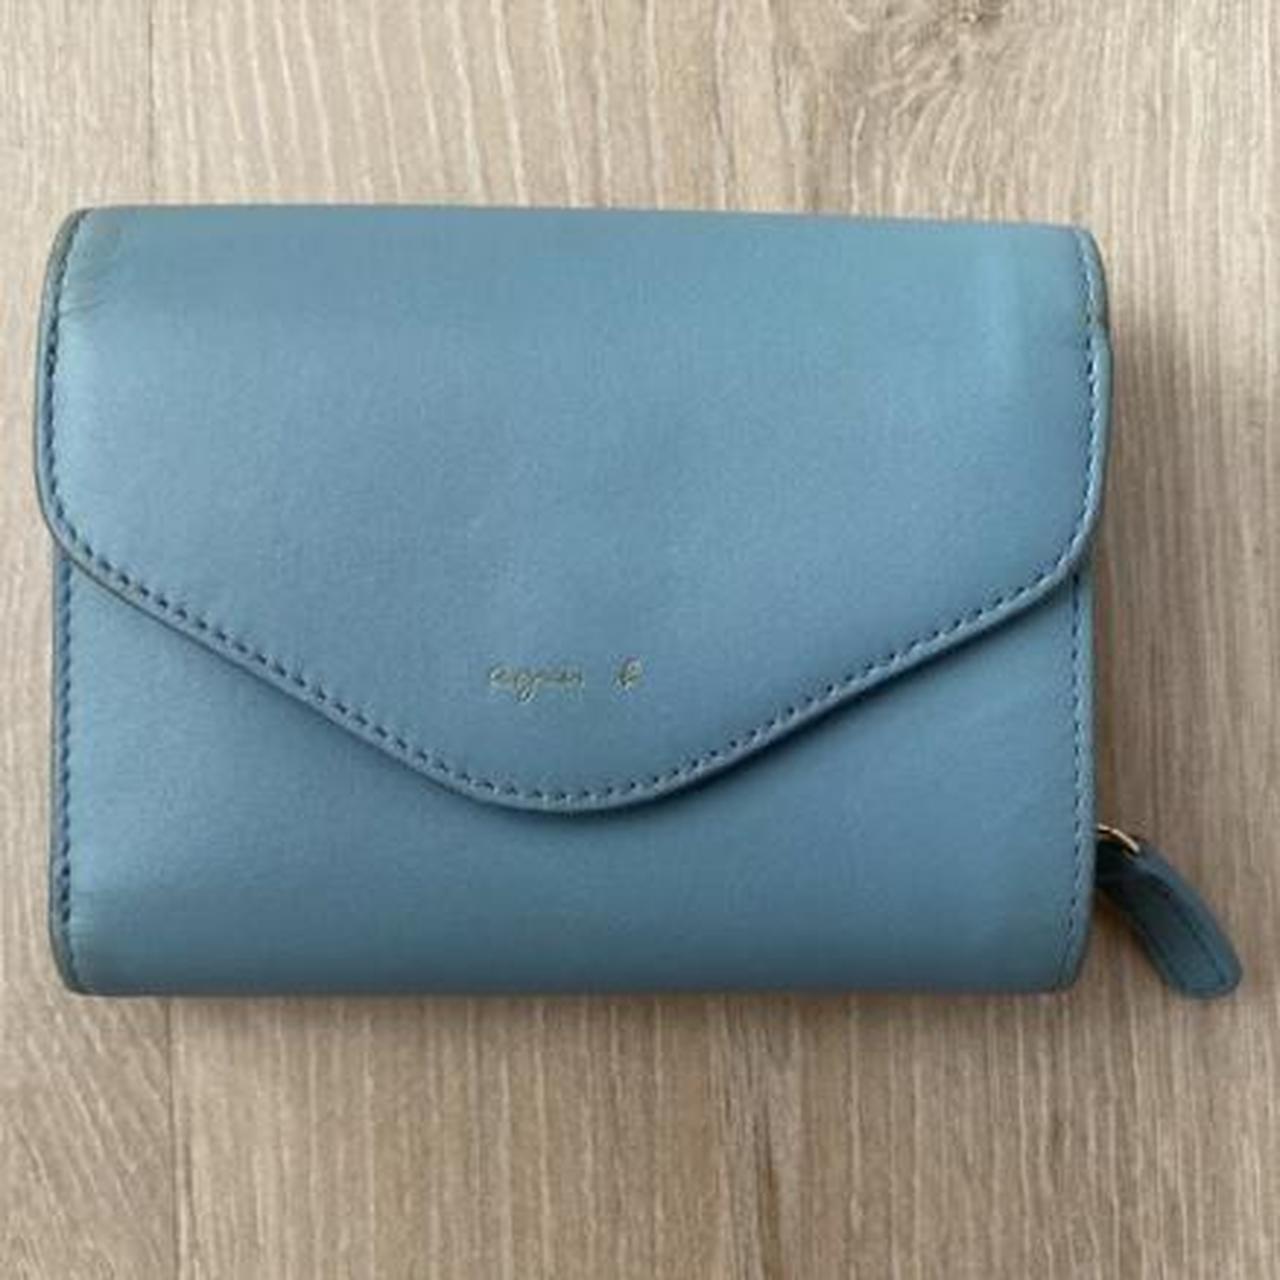 Agnès b. Voyage Flap Light Blue Leather Wallet - Depop